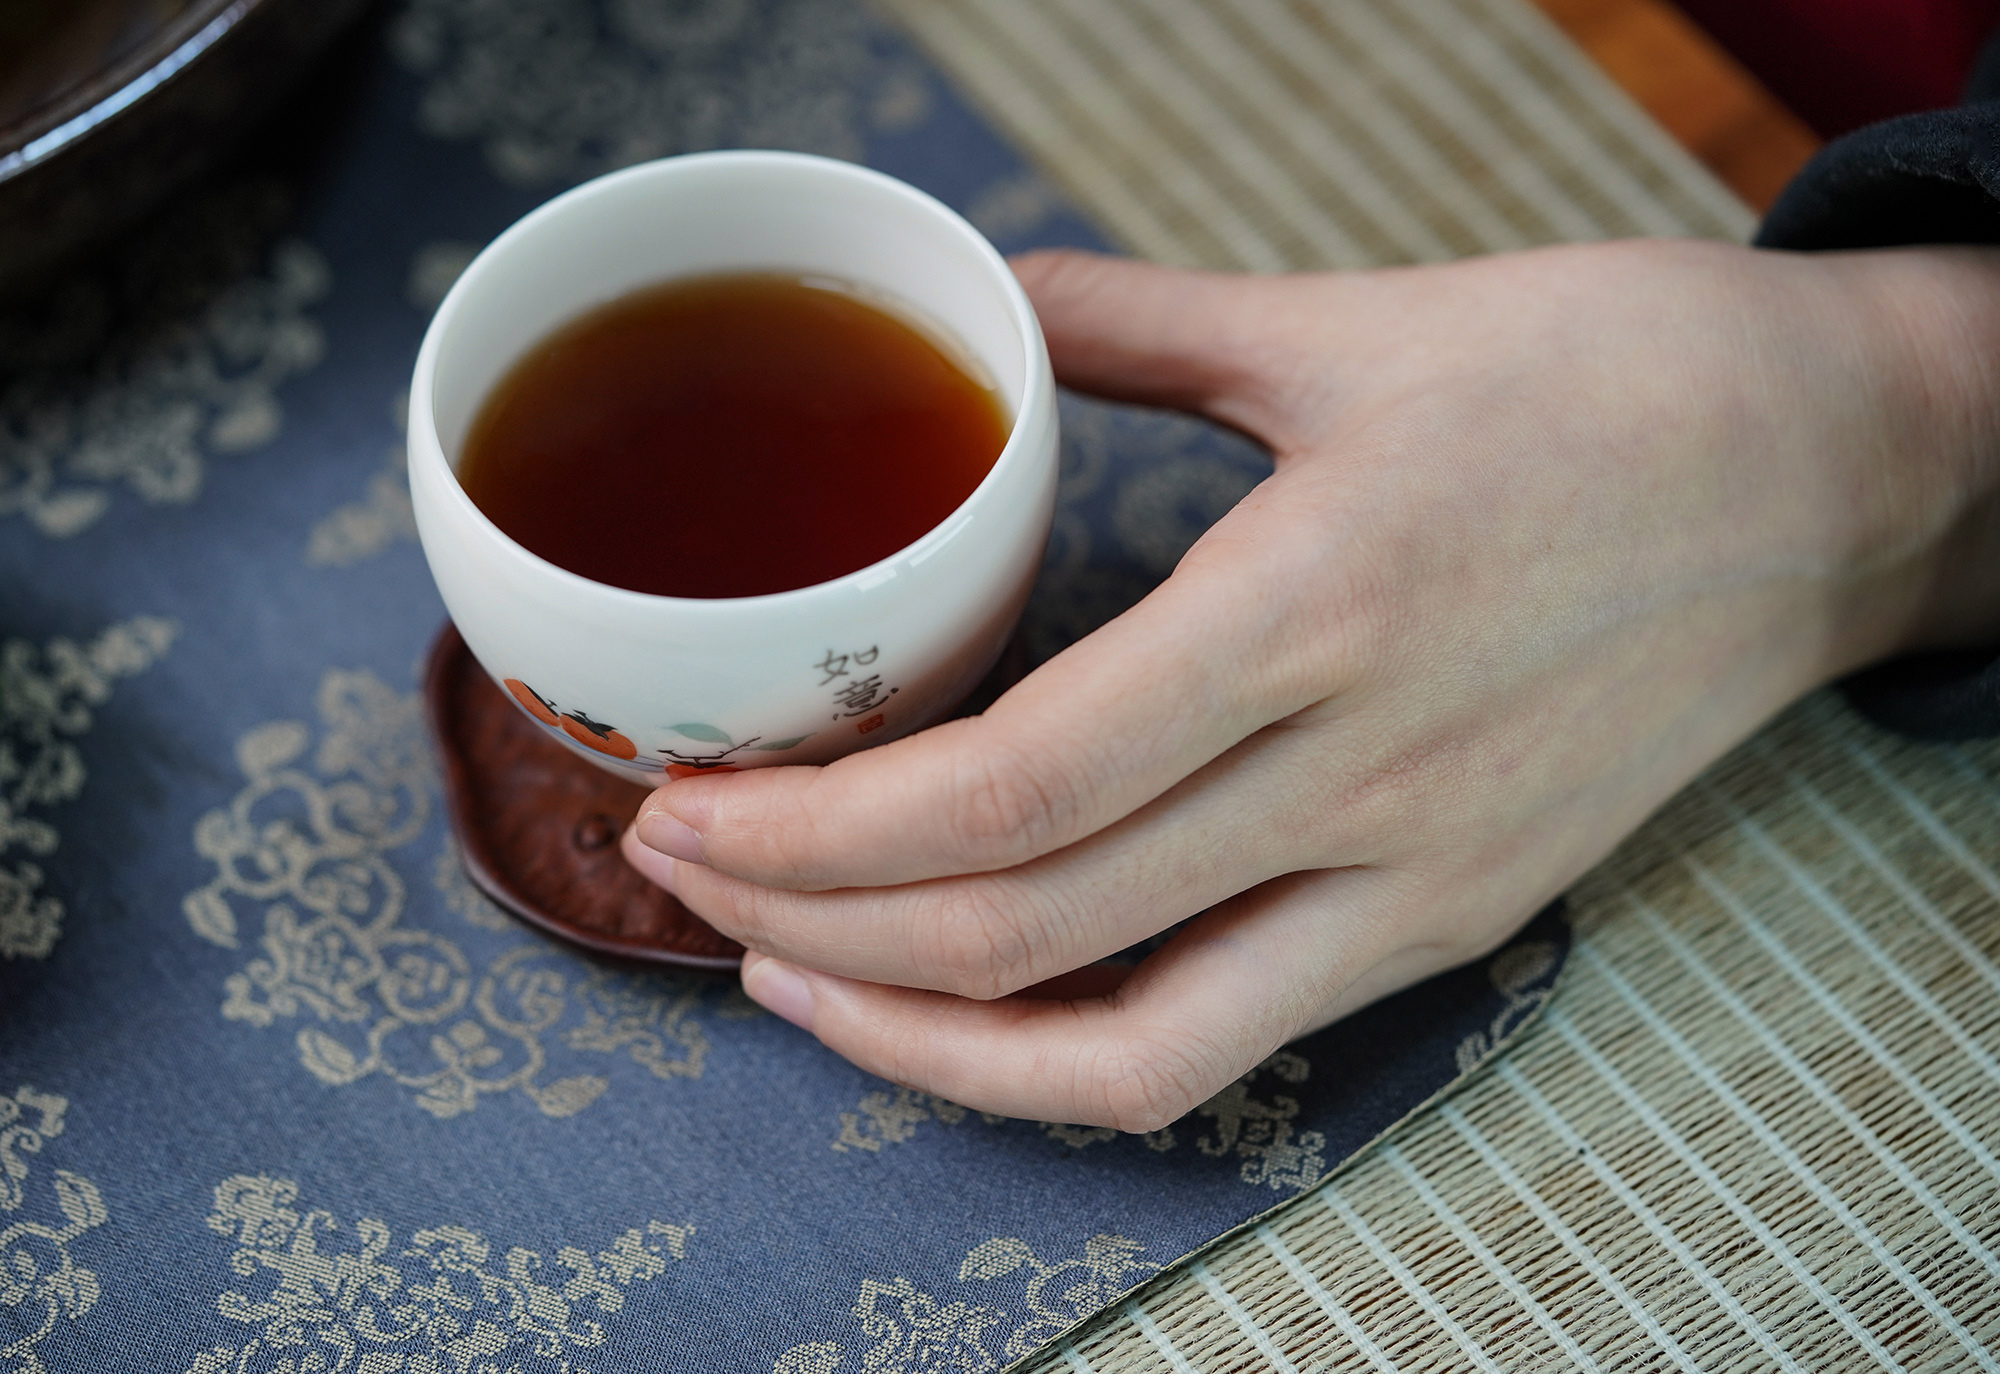 小喜年-普洱茶原料的“天花板”，2010年的何仕华景迈“宫廷”迷你熟饼